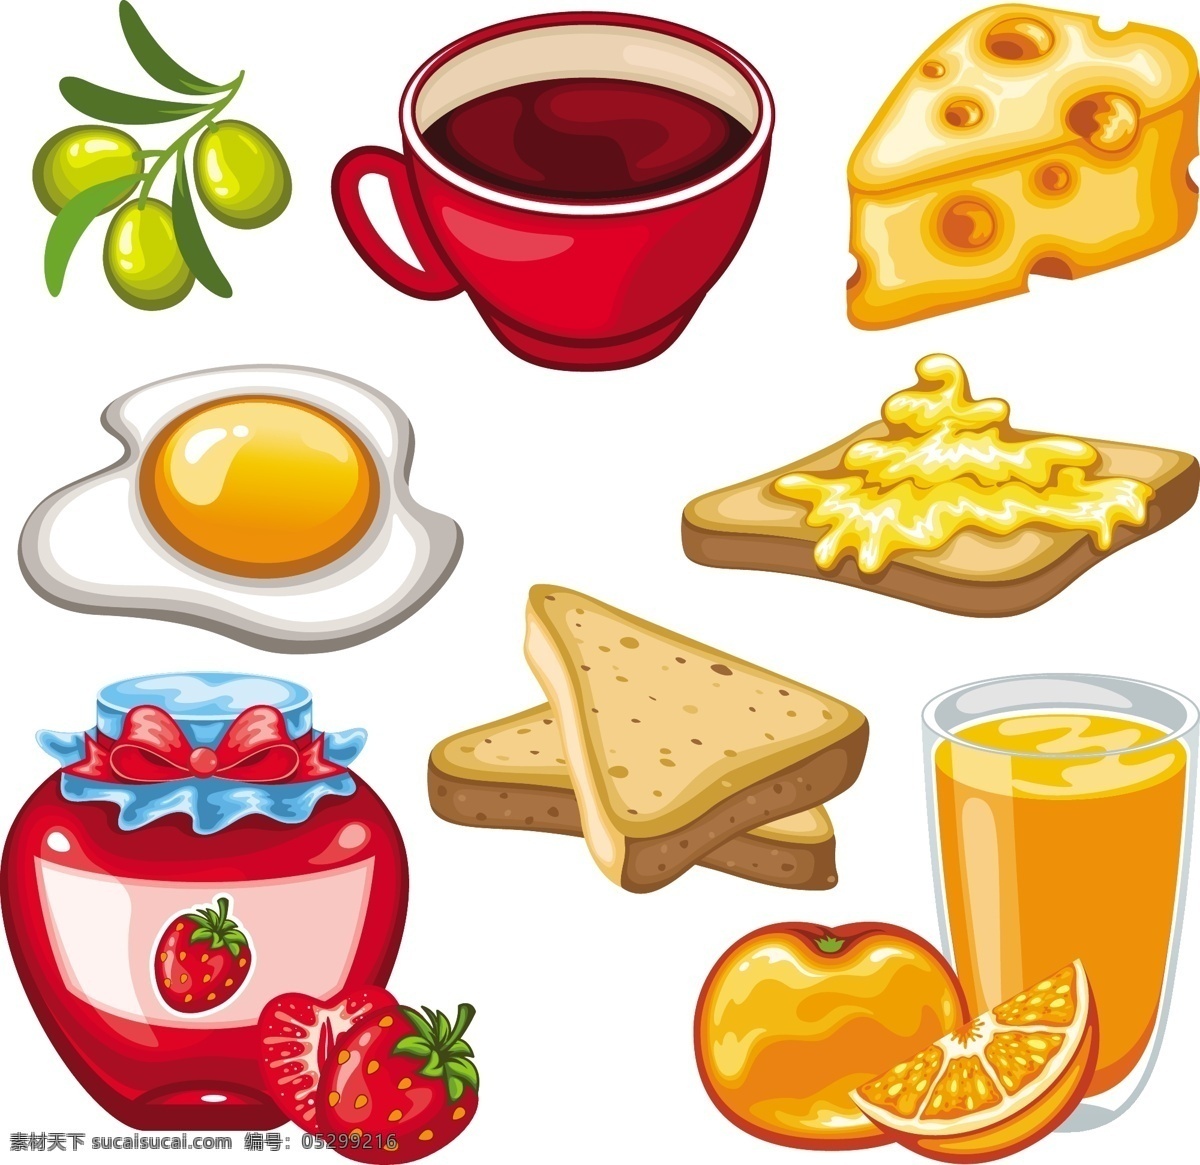 水果 饮料 食品 矢量 图形 集 矢量食物 矢量图形 日常生活